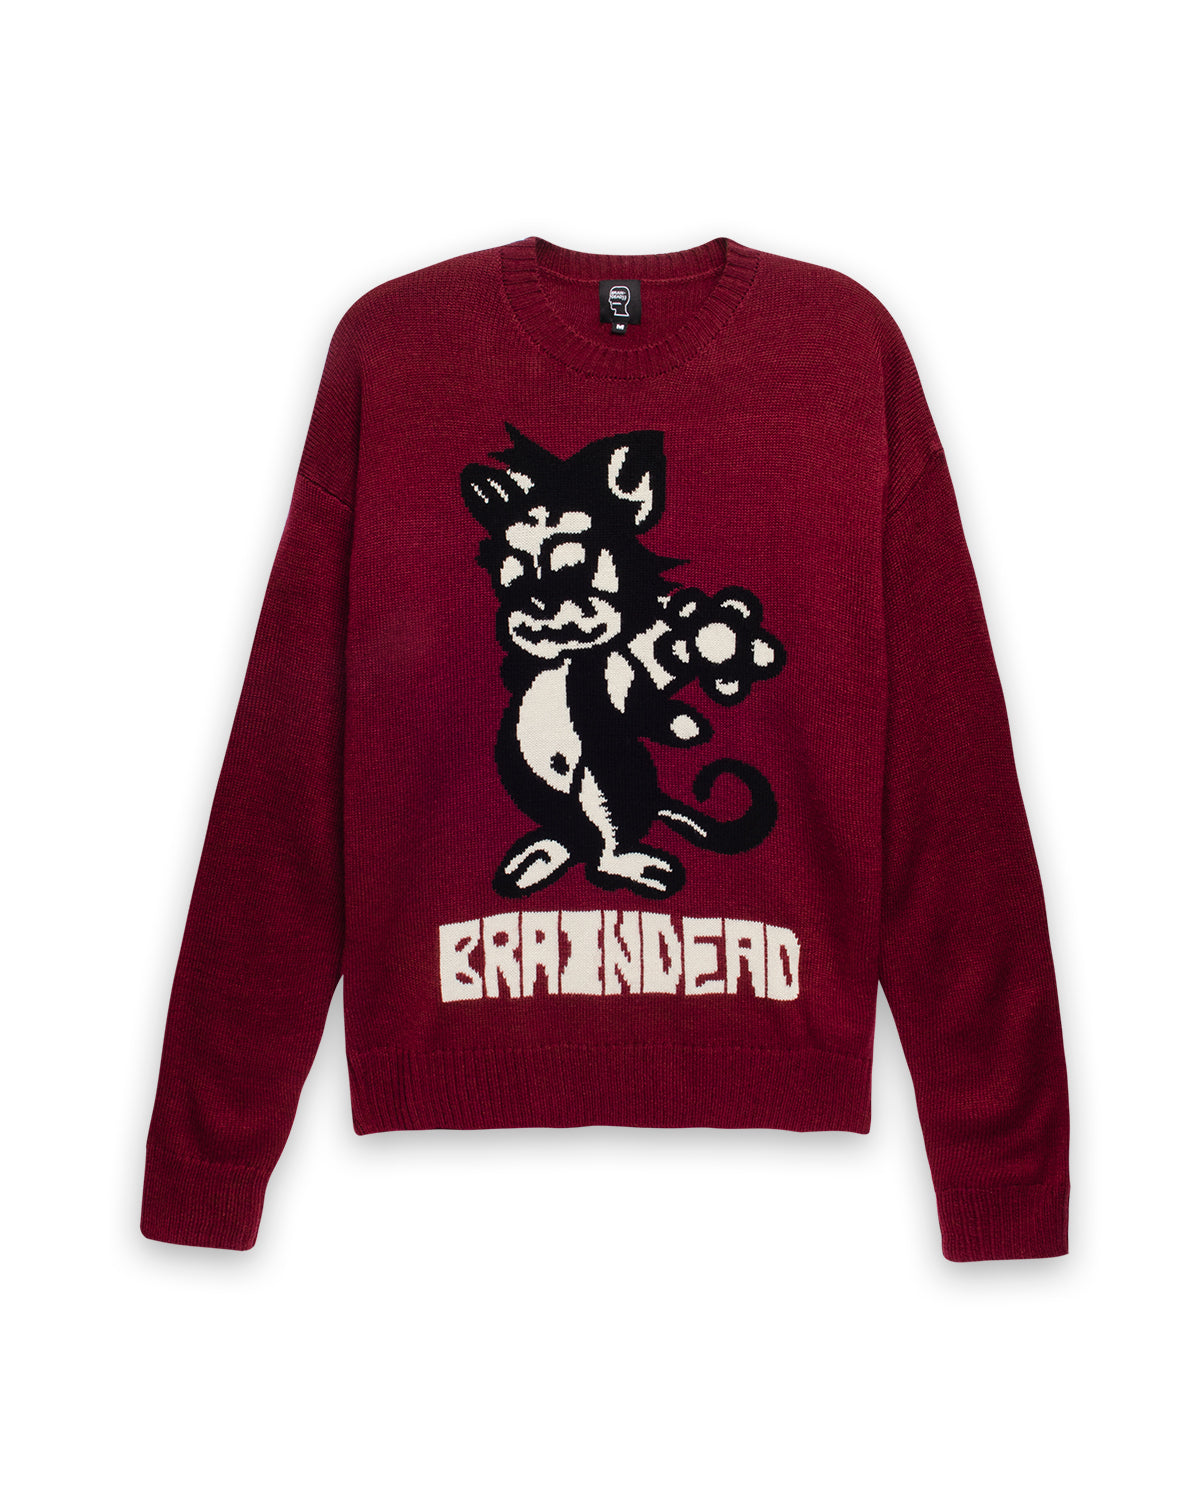 Meow Knit Sweater - Raspberry – Brain Dead